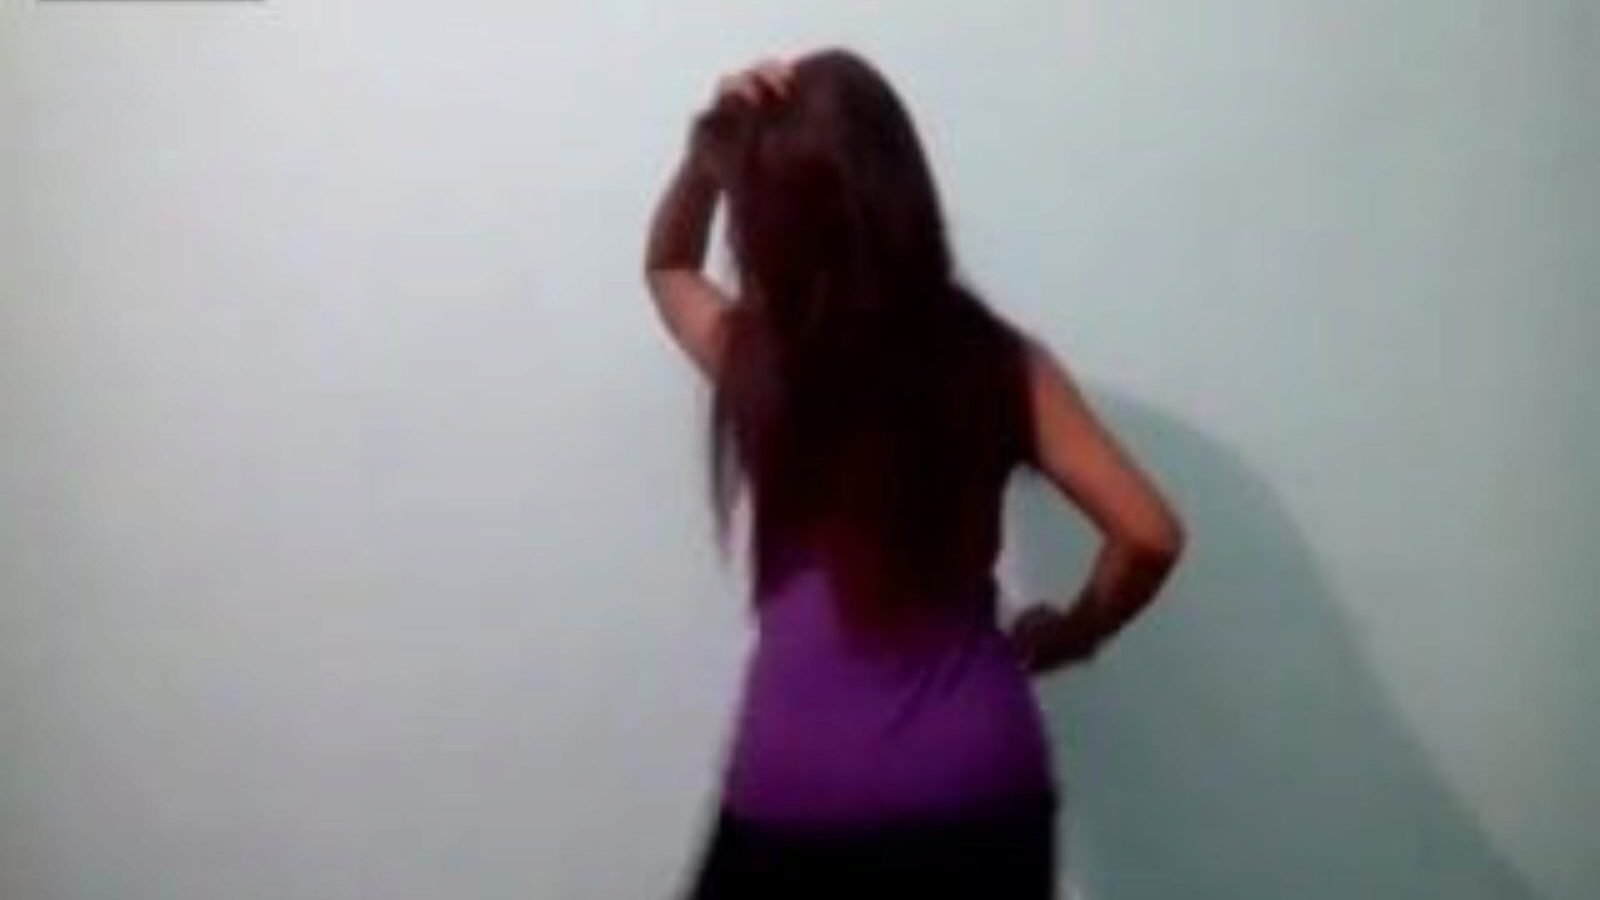 amante de telugu dança nua andhra, vídeo pornô indiano gratuito a4 assistir vídeo de dança nua amante telugu andhra no xhamster, o site superlativamente bom do tubo foda-se com toneladas de vídeos pornôs de nudez e malayalam de pai americano indiano grátis